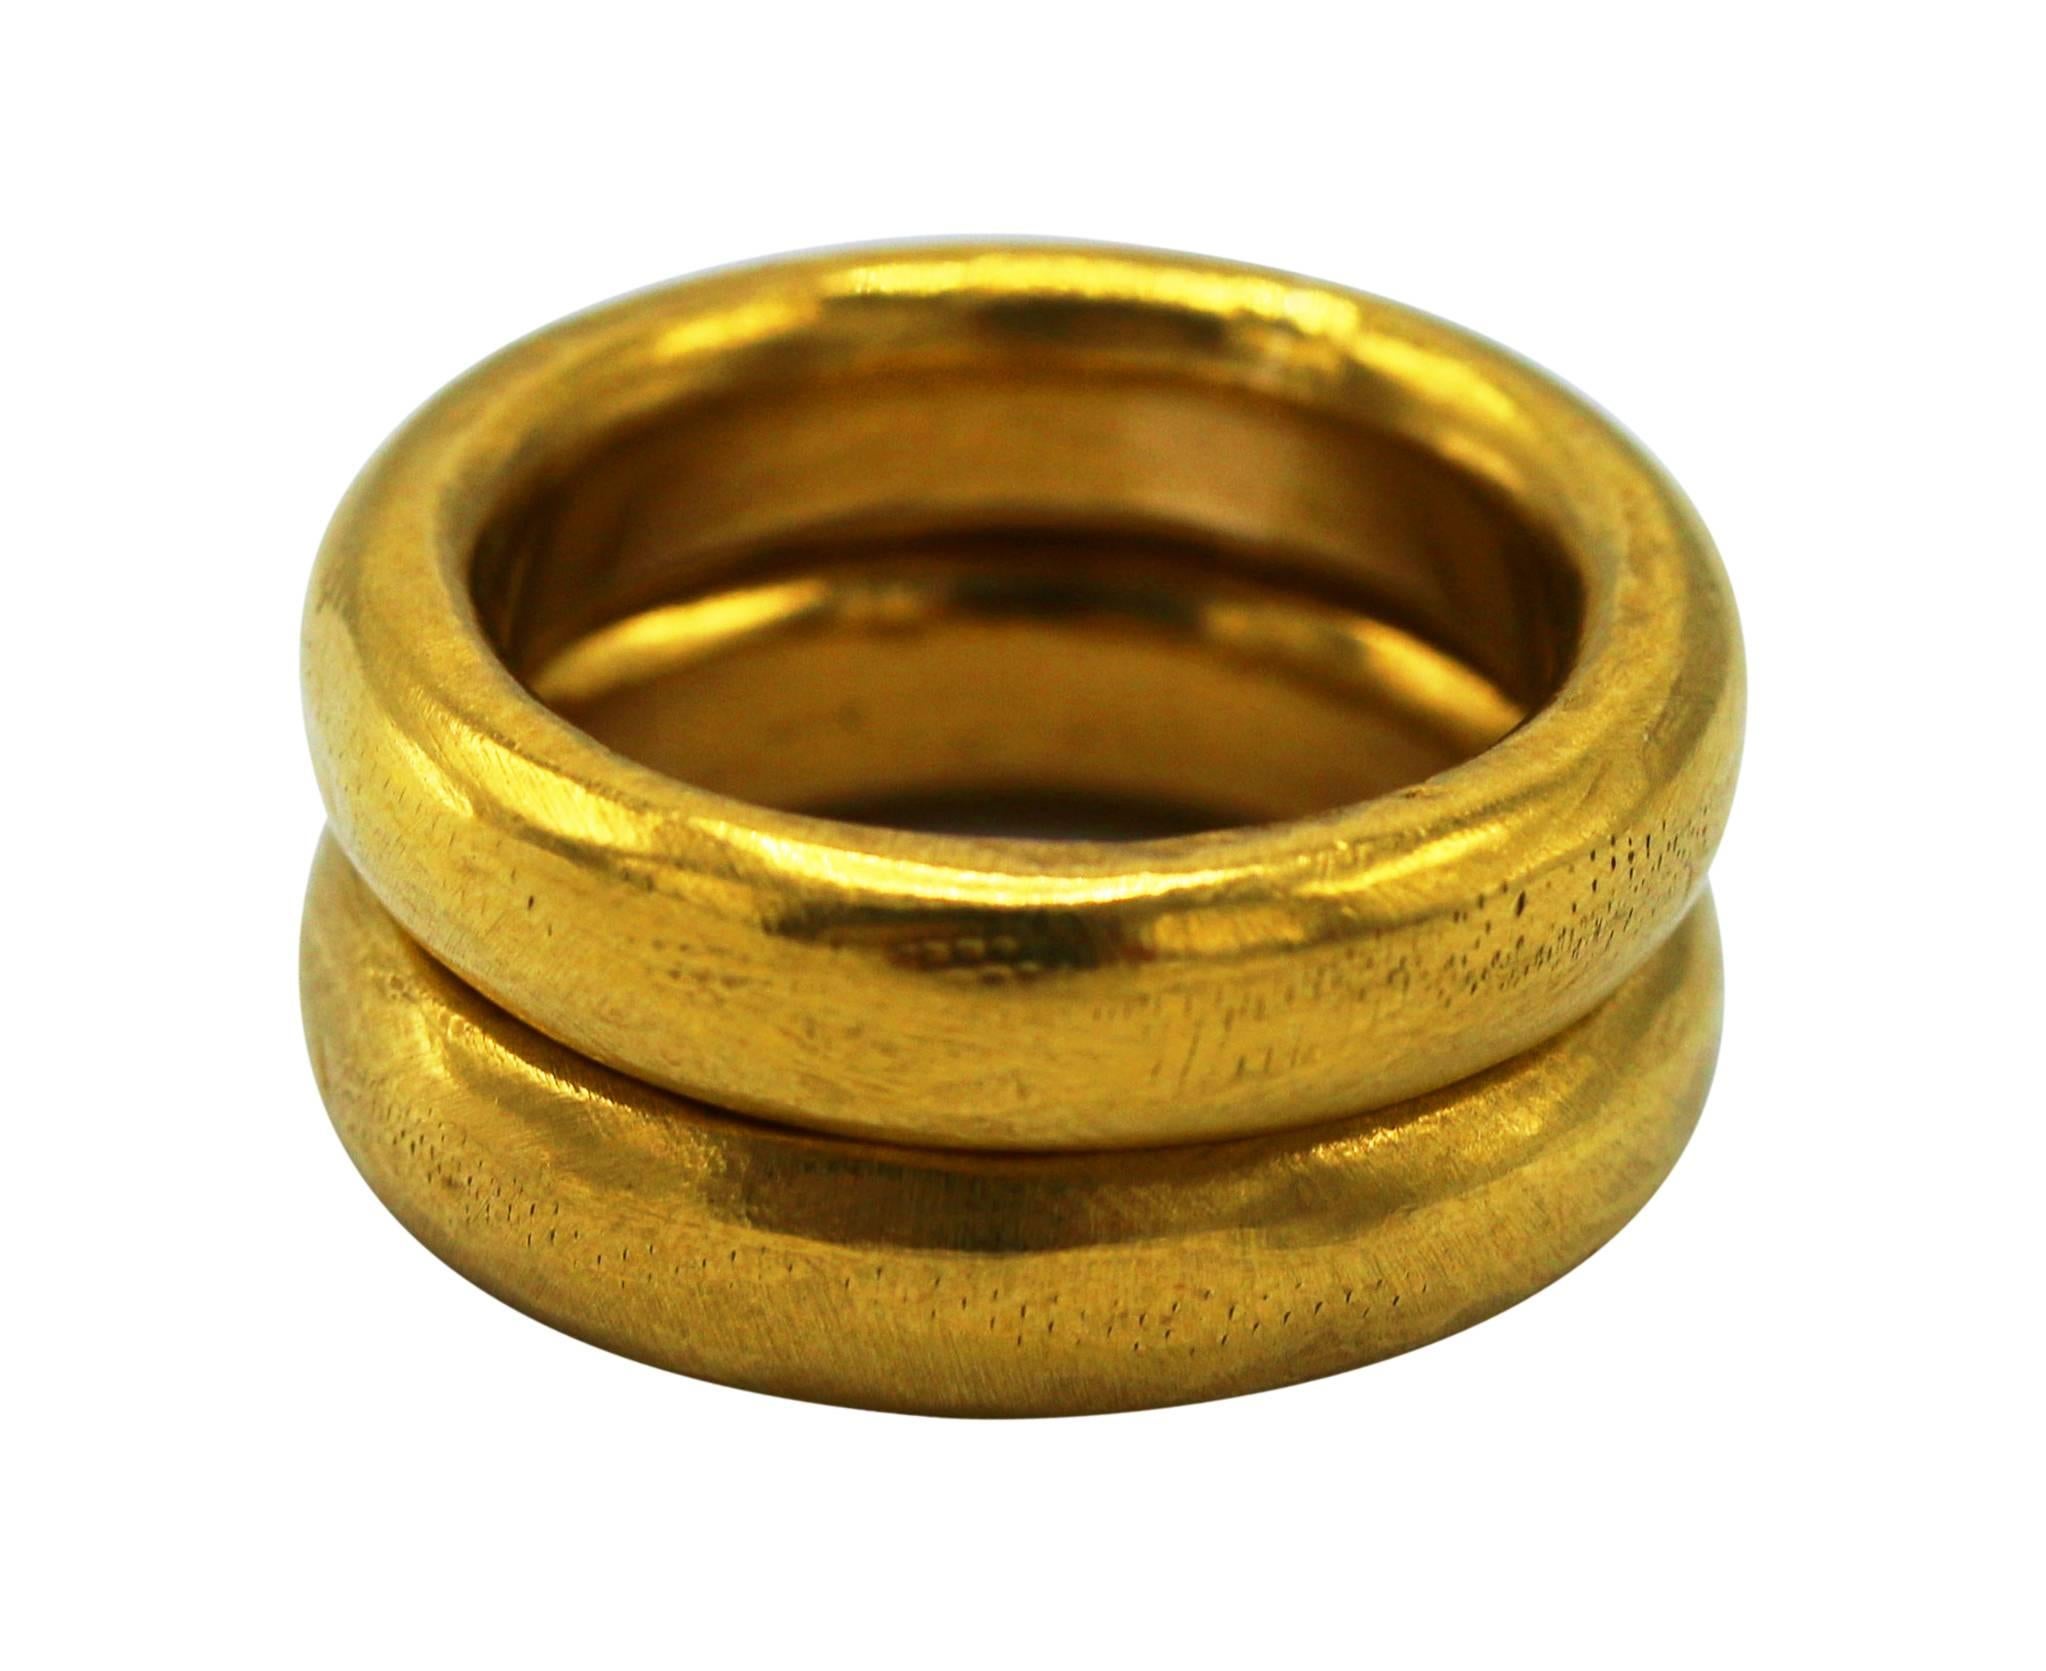 24 carat wedding ring